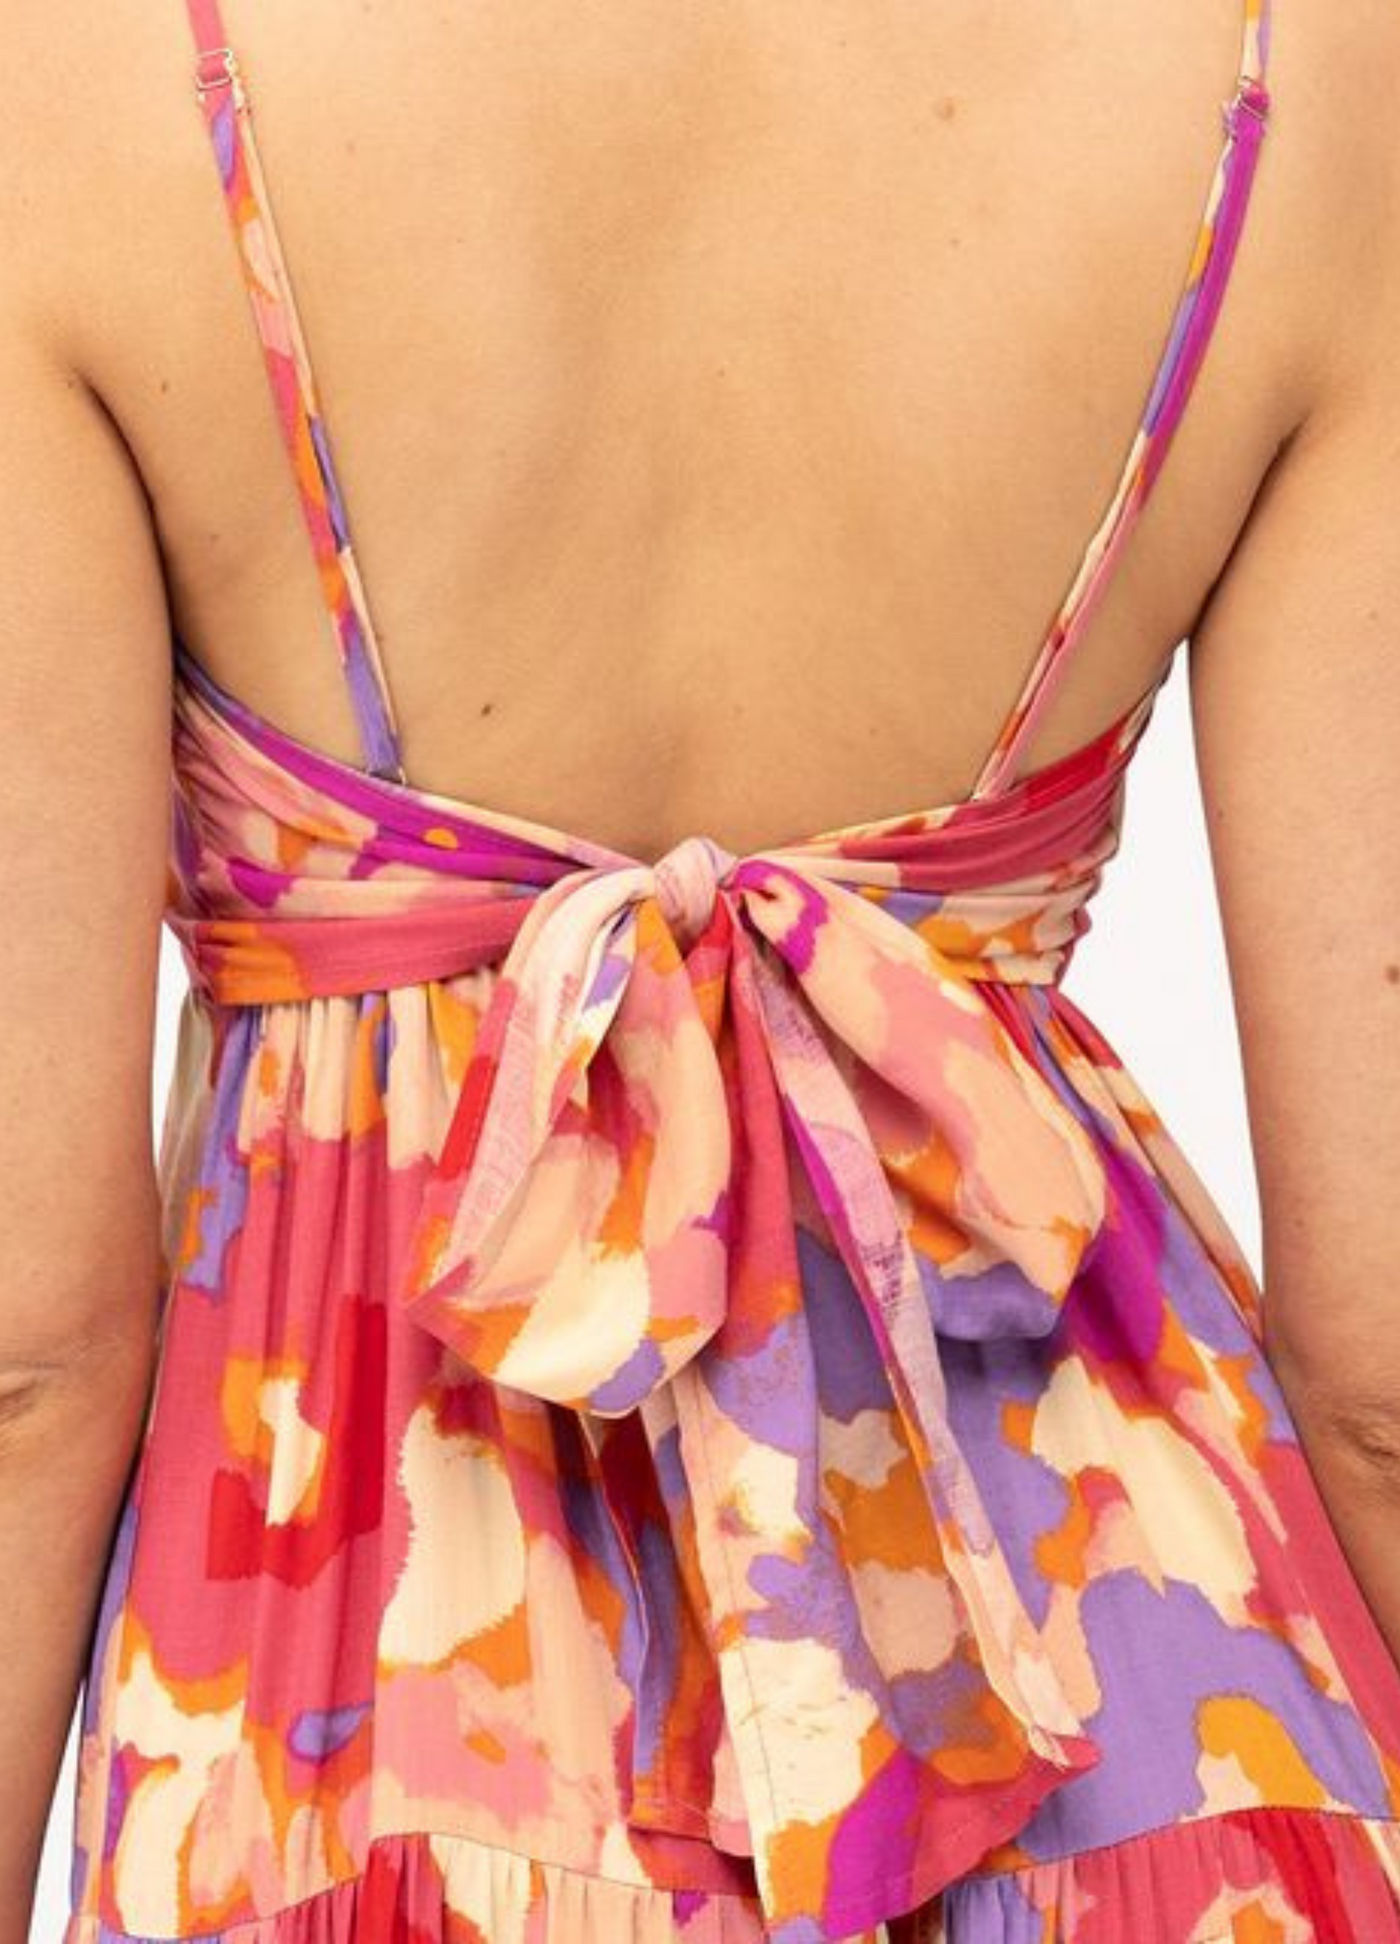 Paper Heart - Strappy Zahara Maxi Dress